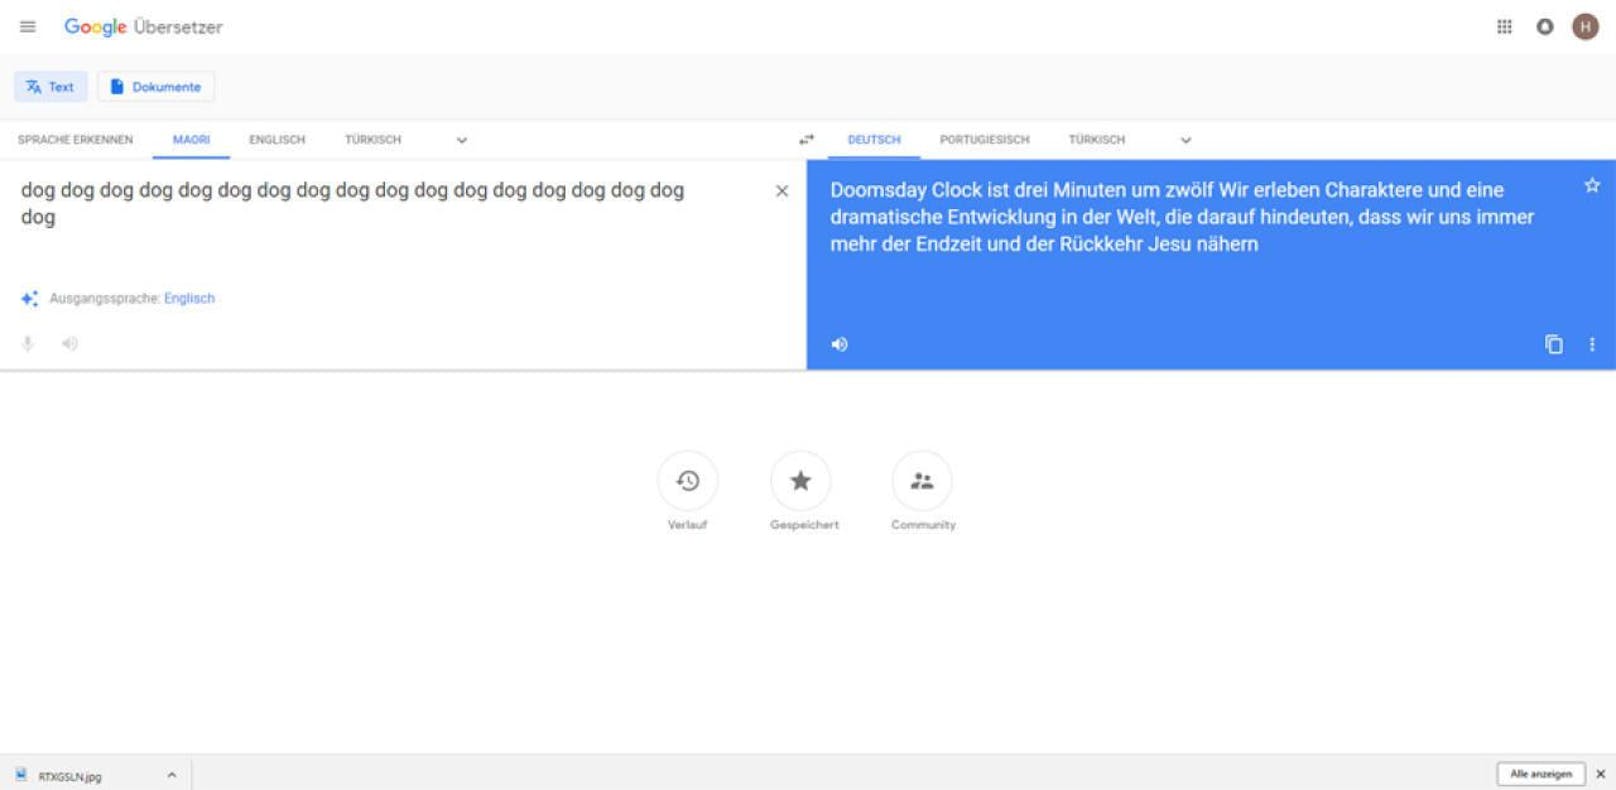 Dämonen auf Google Translate?